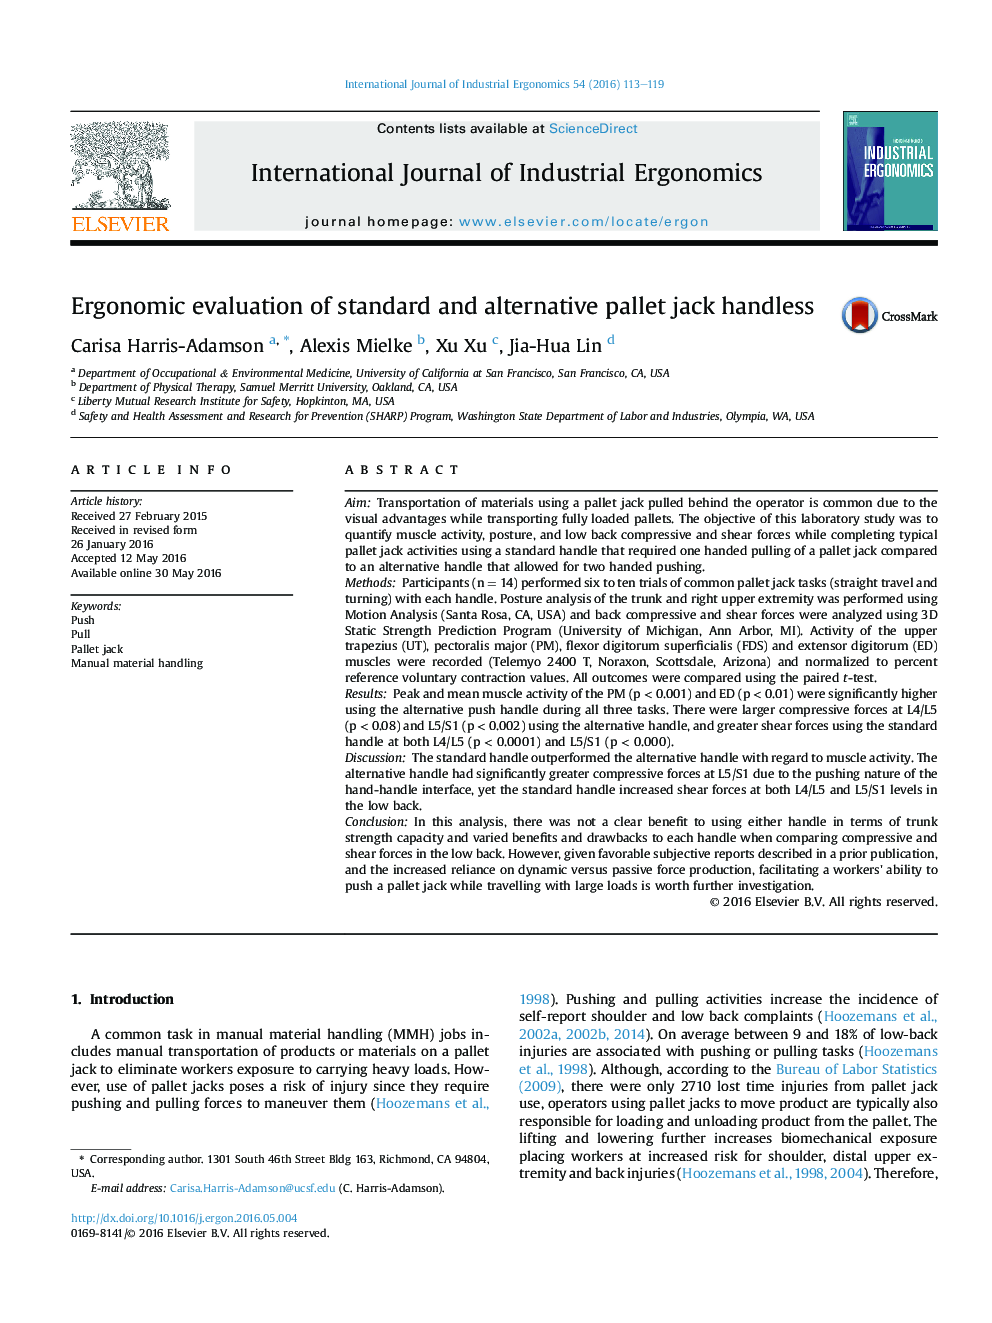 ارزیابی ارگونومیک از جک بی دست پالت استاندارد و جایگزین 